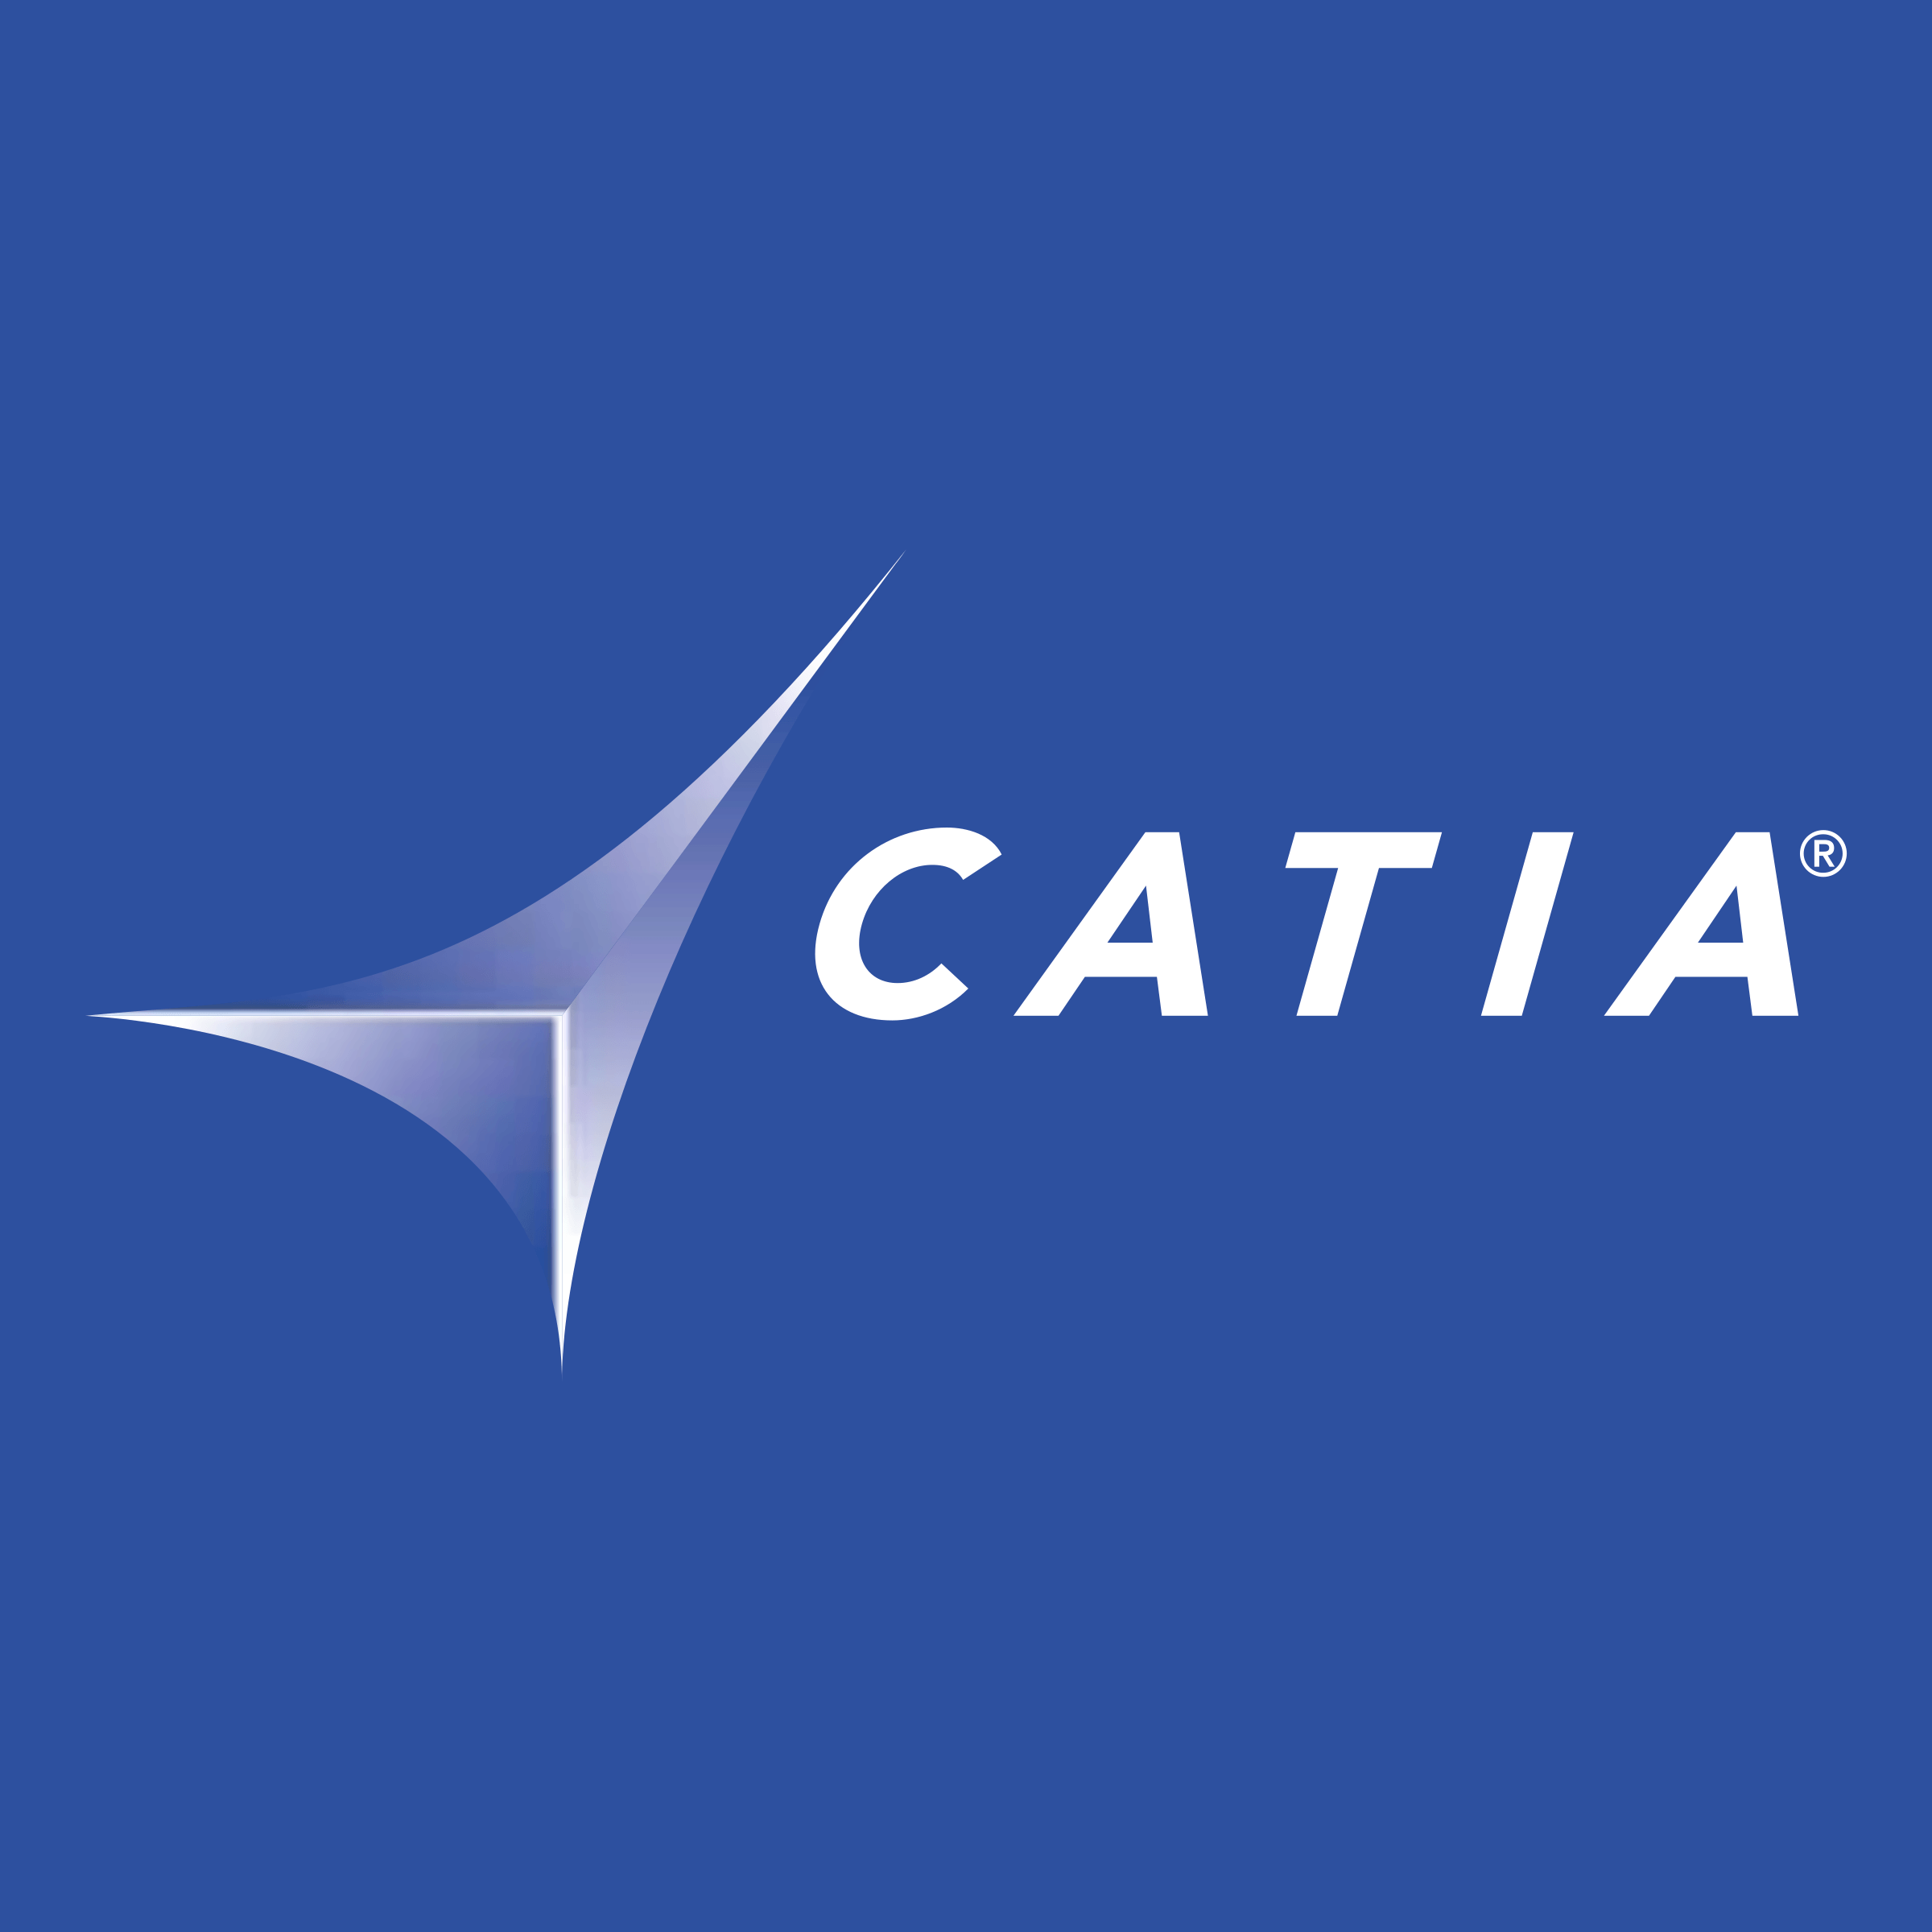 Catia Logo - Catia Solutions Logo PNG Transparent & SVG Vector - Freebie Supply